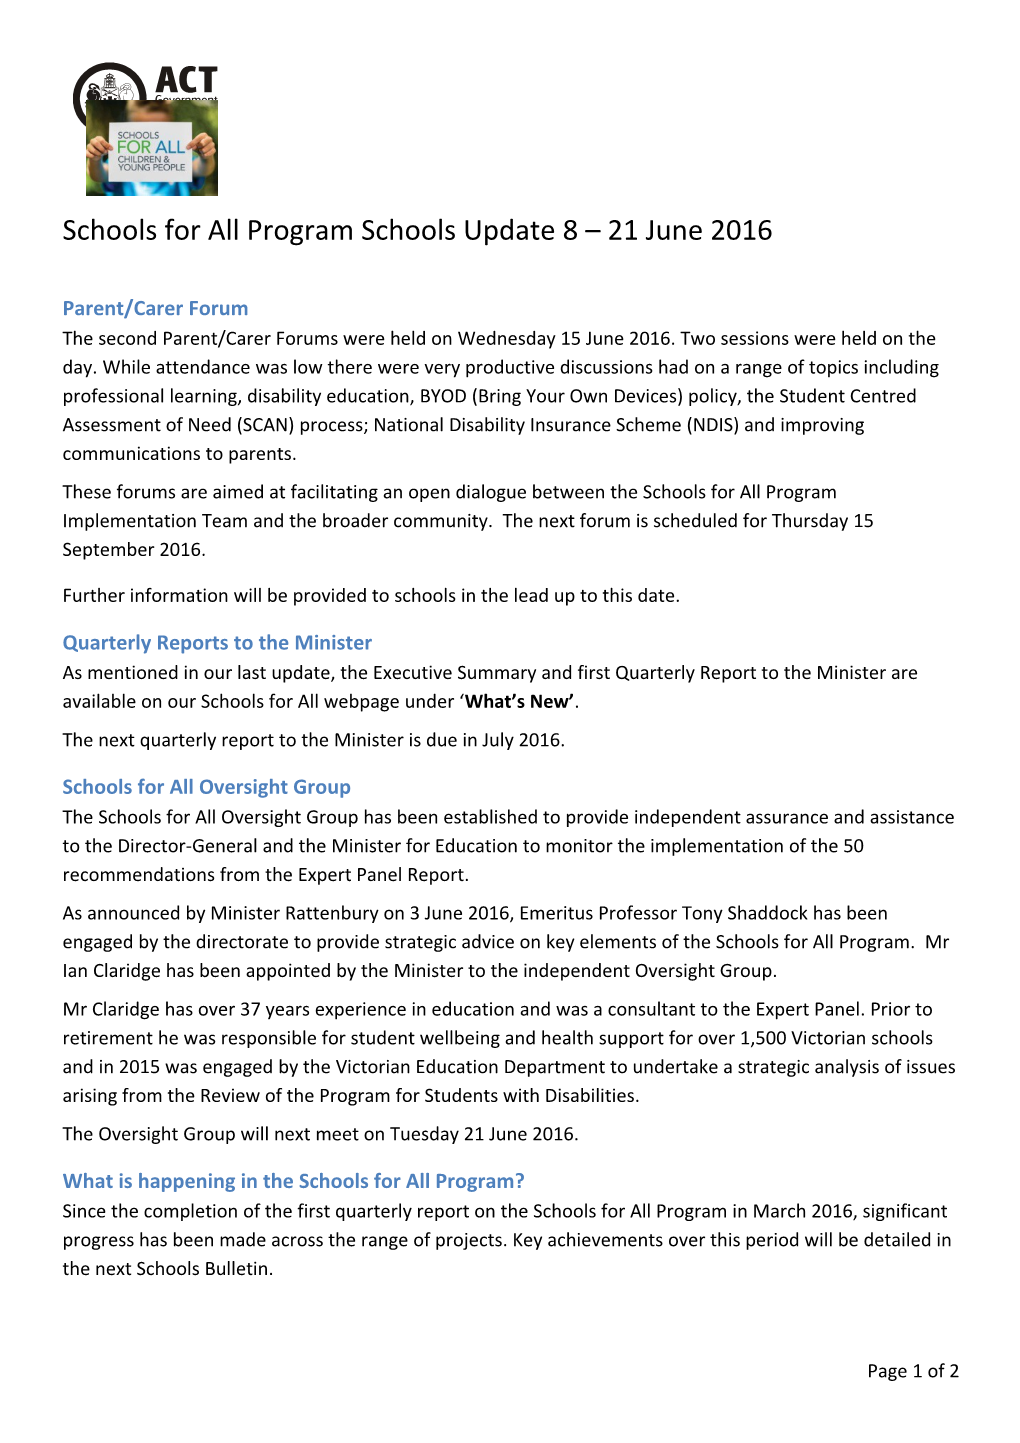 Schools for All Program Update 8